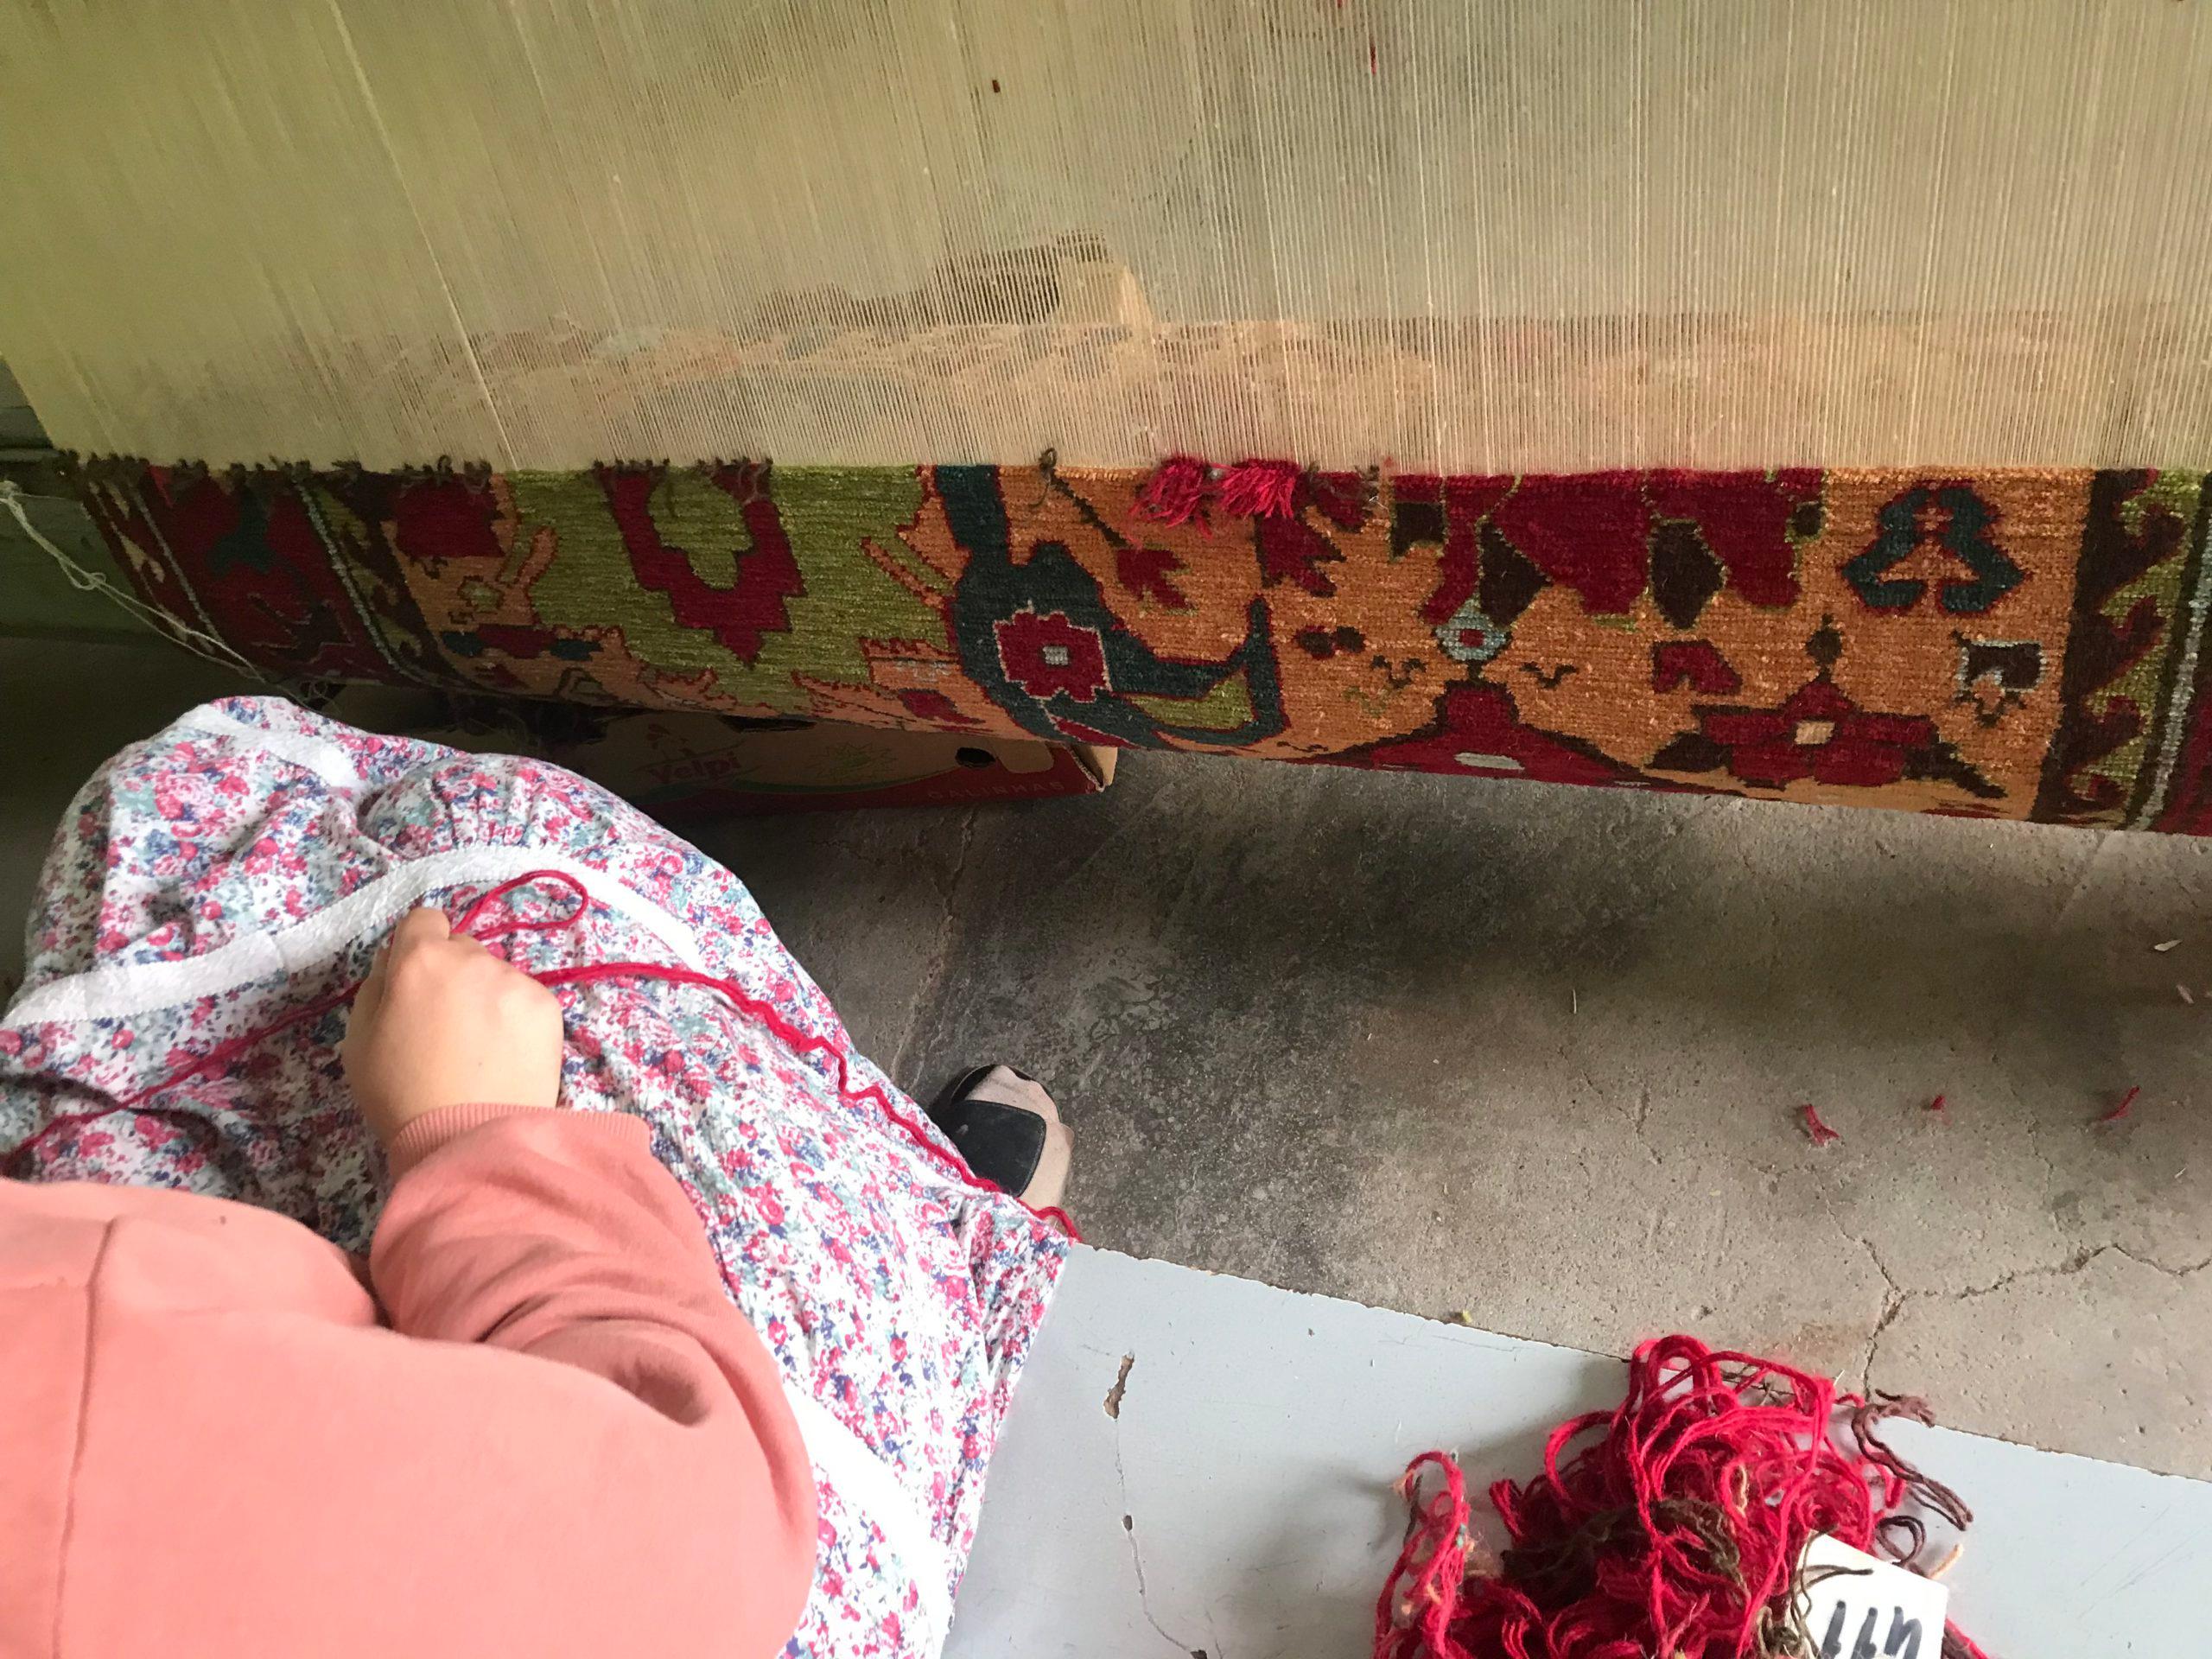 Wool Ararat Rugs Azerbaijan Harshang Desing Carpet Caucasian Revival Rug Natural Dyed For Sale